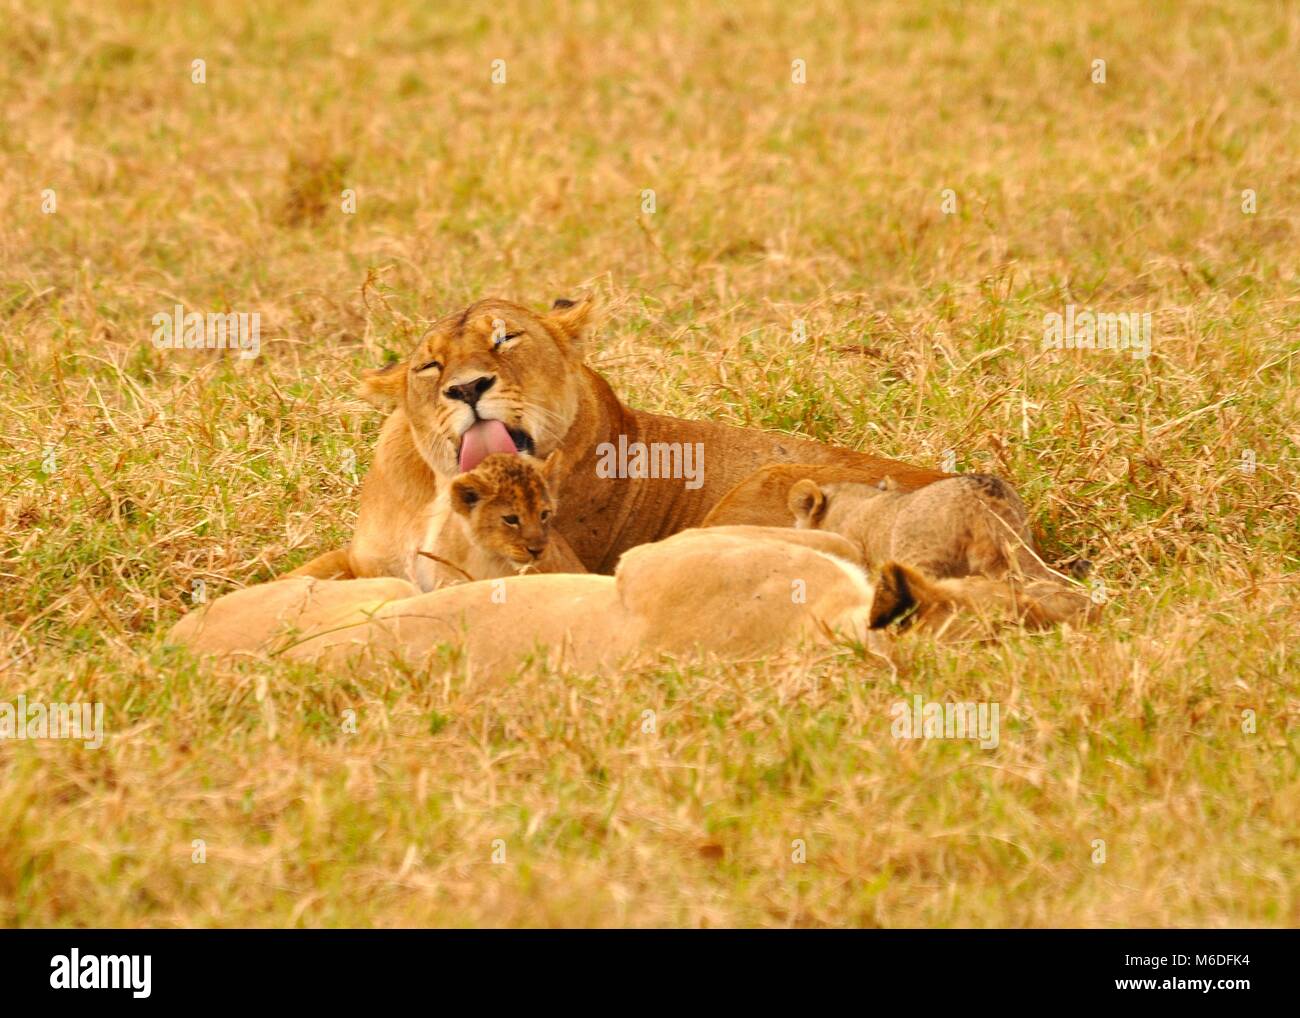 Una madre e dei cubs (Panthera leo) che giacciono nella Savannah e una madre che lecca il cucciolo. Preso nel parco nazionale di Serengeti, Tanzania Foto Stock